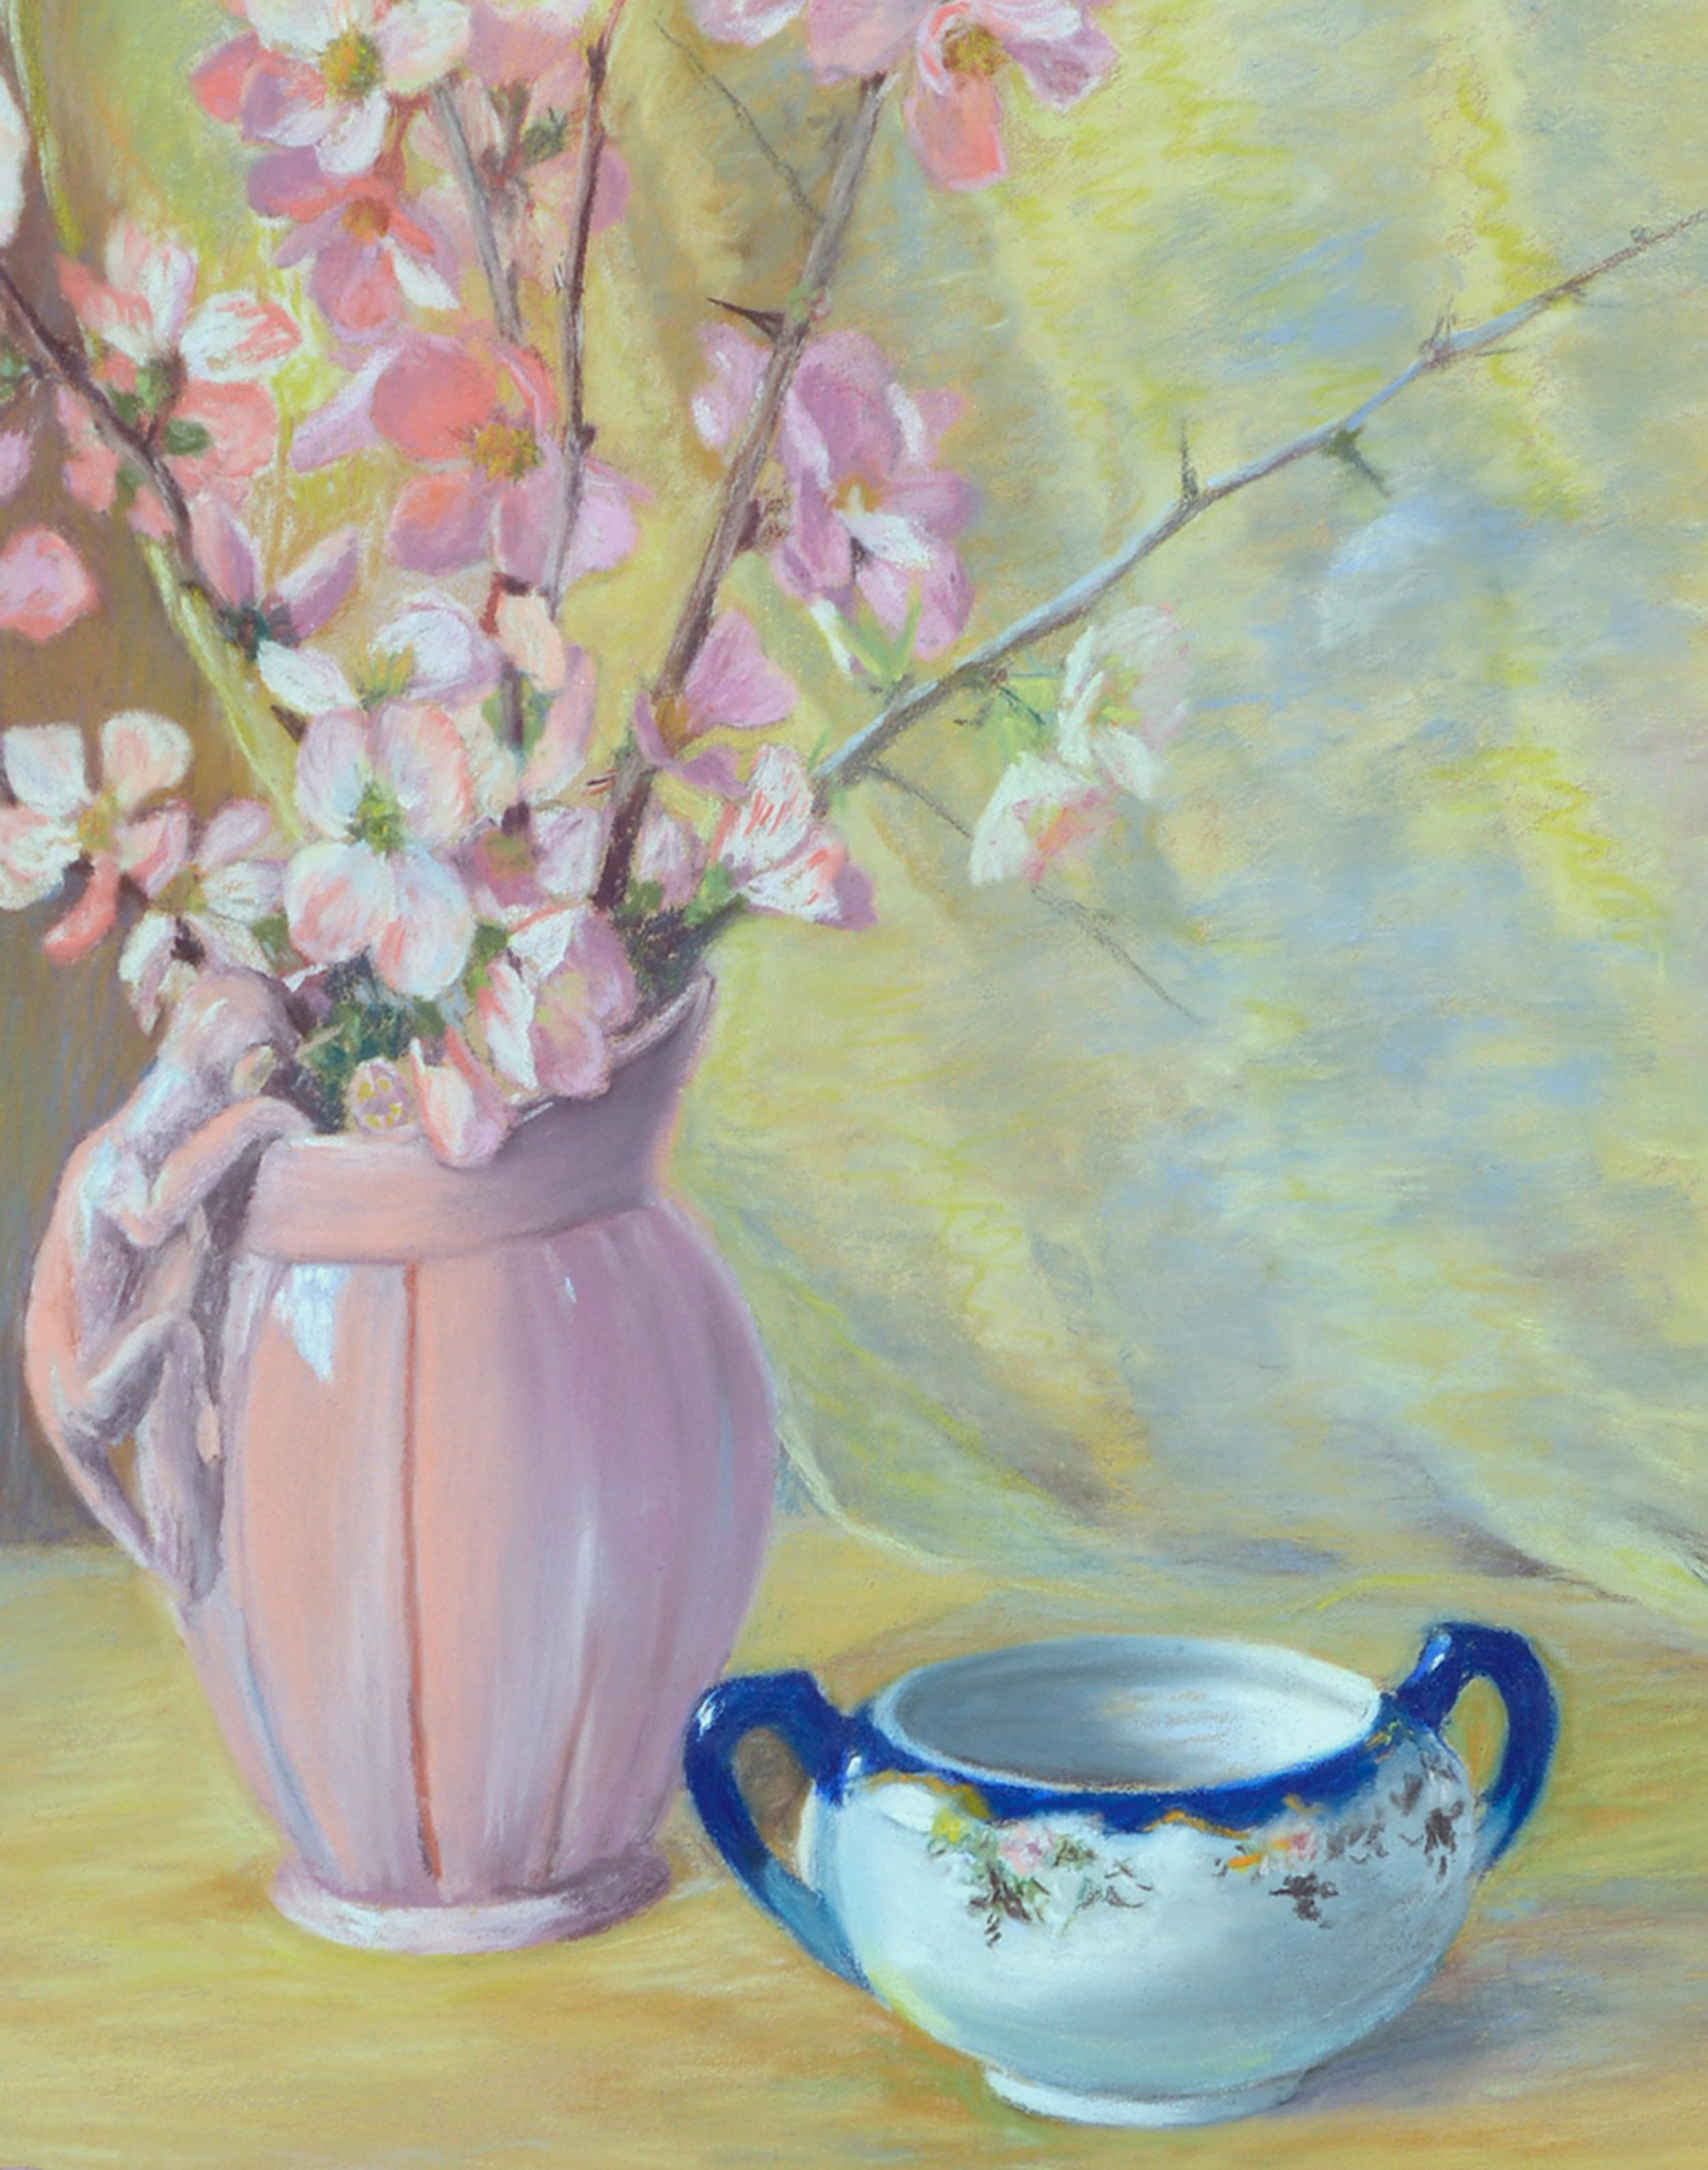 Blumenstillleben aus den 1940er Jahren  Ein A Breath of Spring  (Amerikanischer Impressionismus), Painting, von Eugenie Pack Stiffler